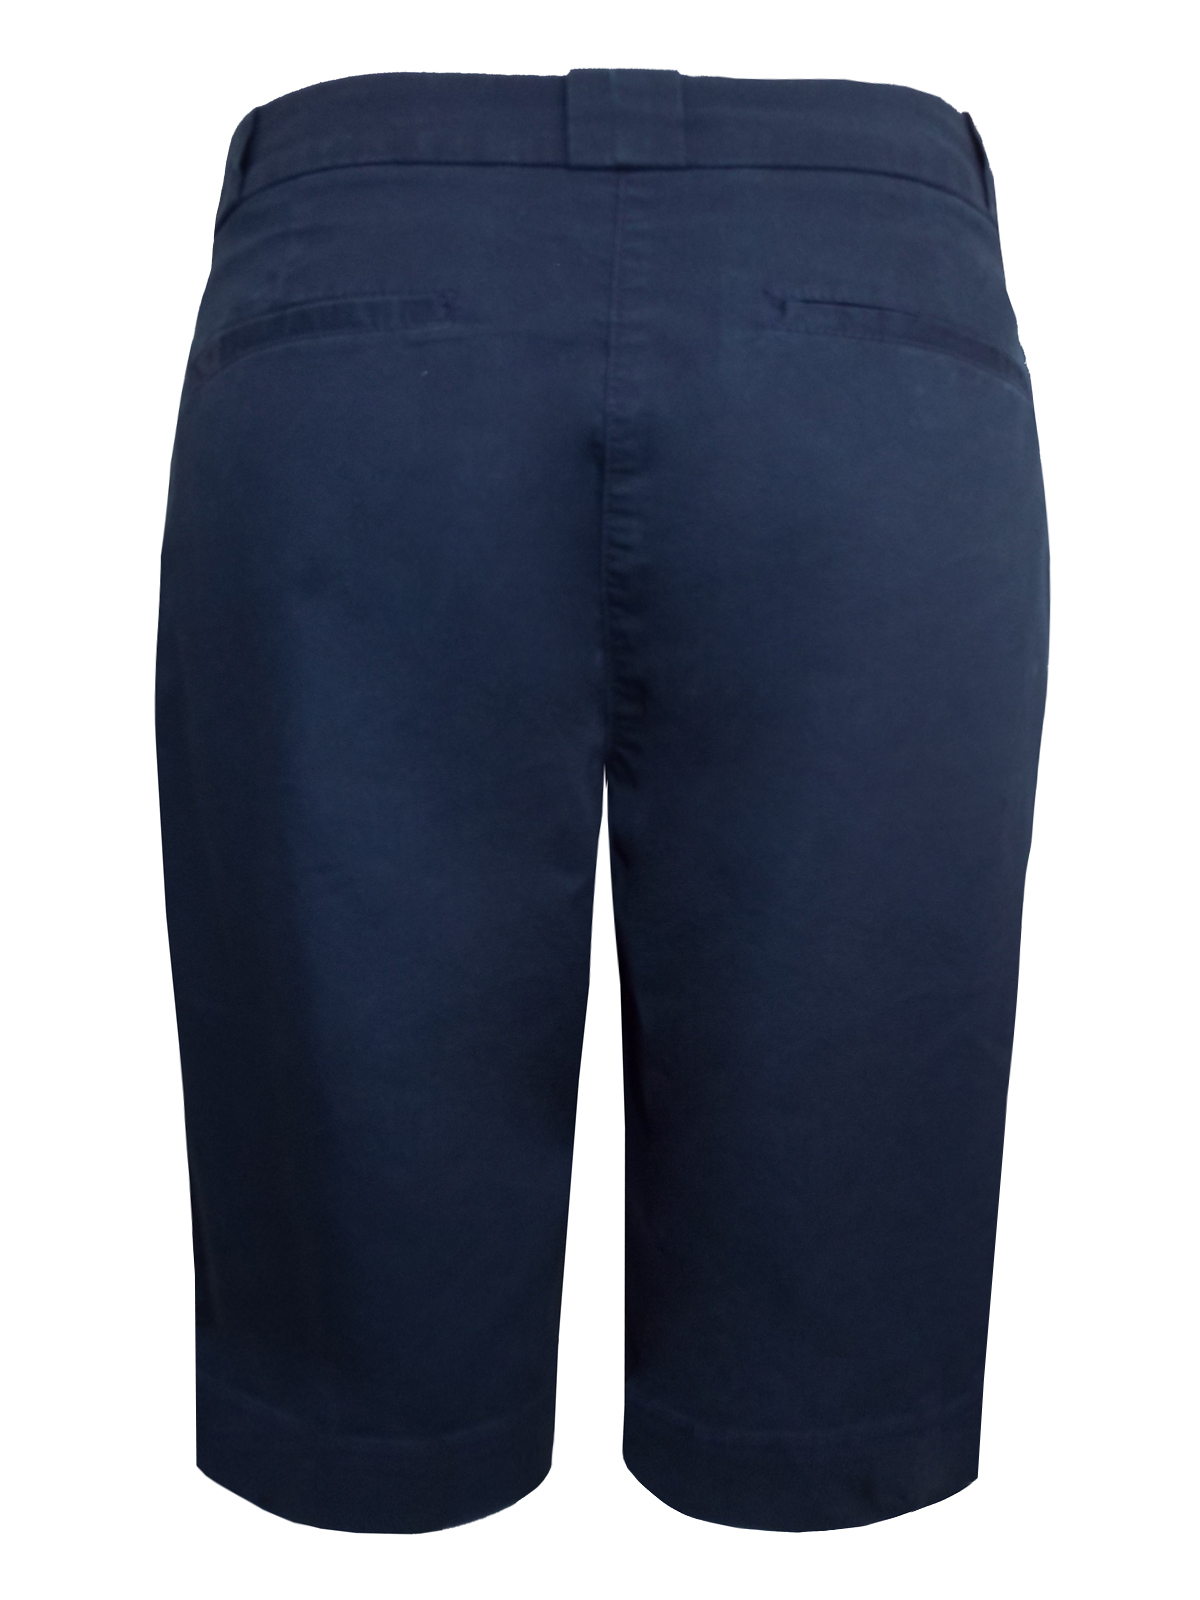 Debenhams - - D3benhams NAVY Cotton Rich Long Shorts - Size 12 to 16